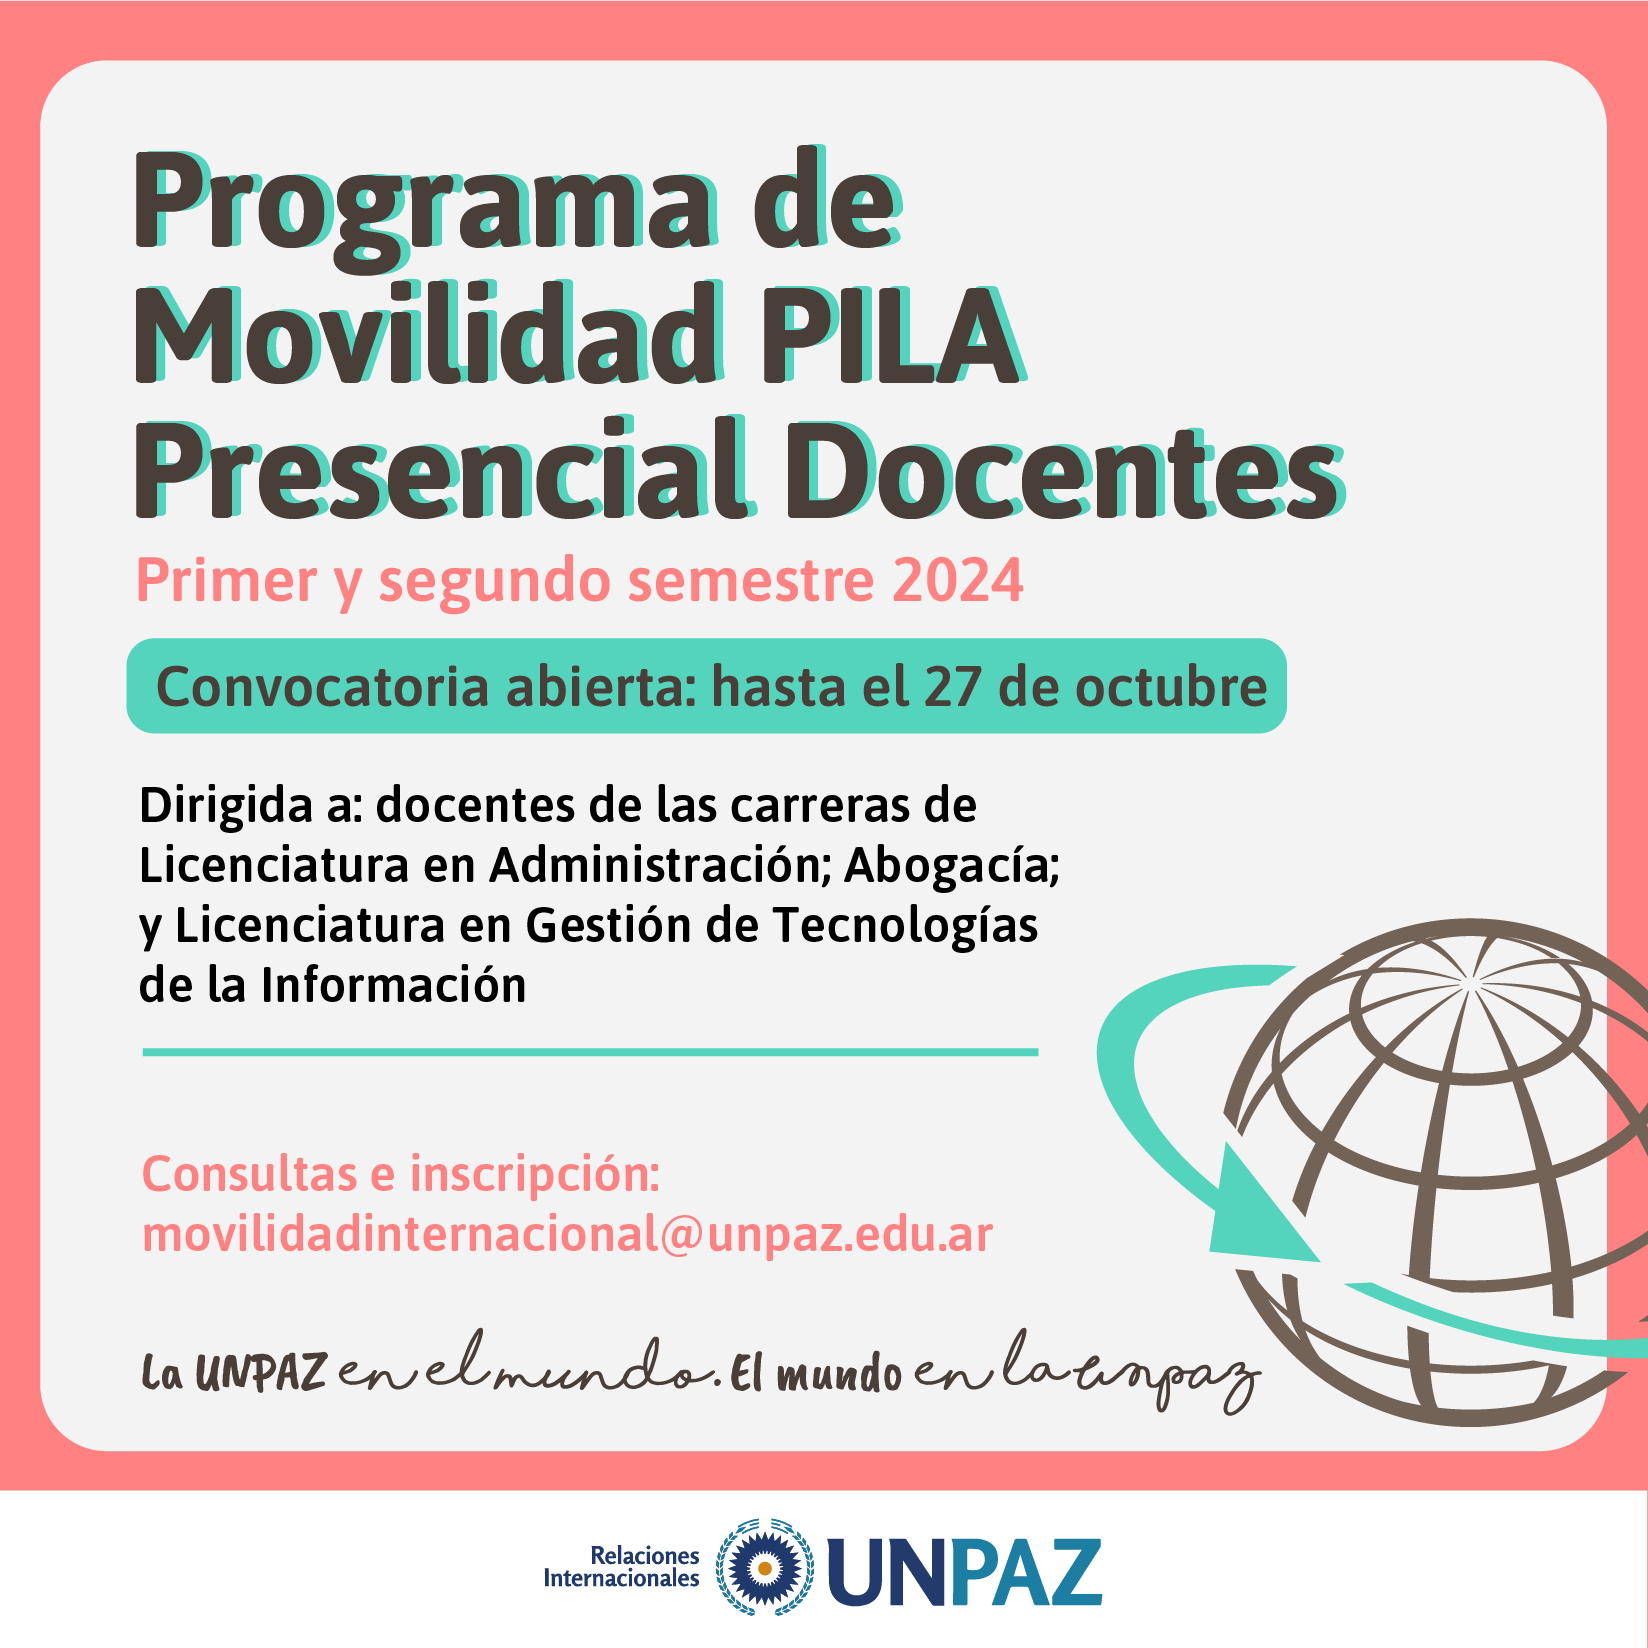 PROGRAMA DE MOVILIDAD PRESENCIAL DOCENTES 